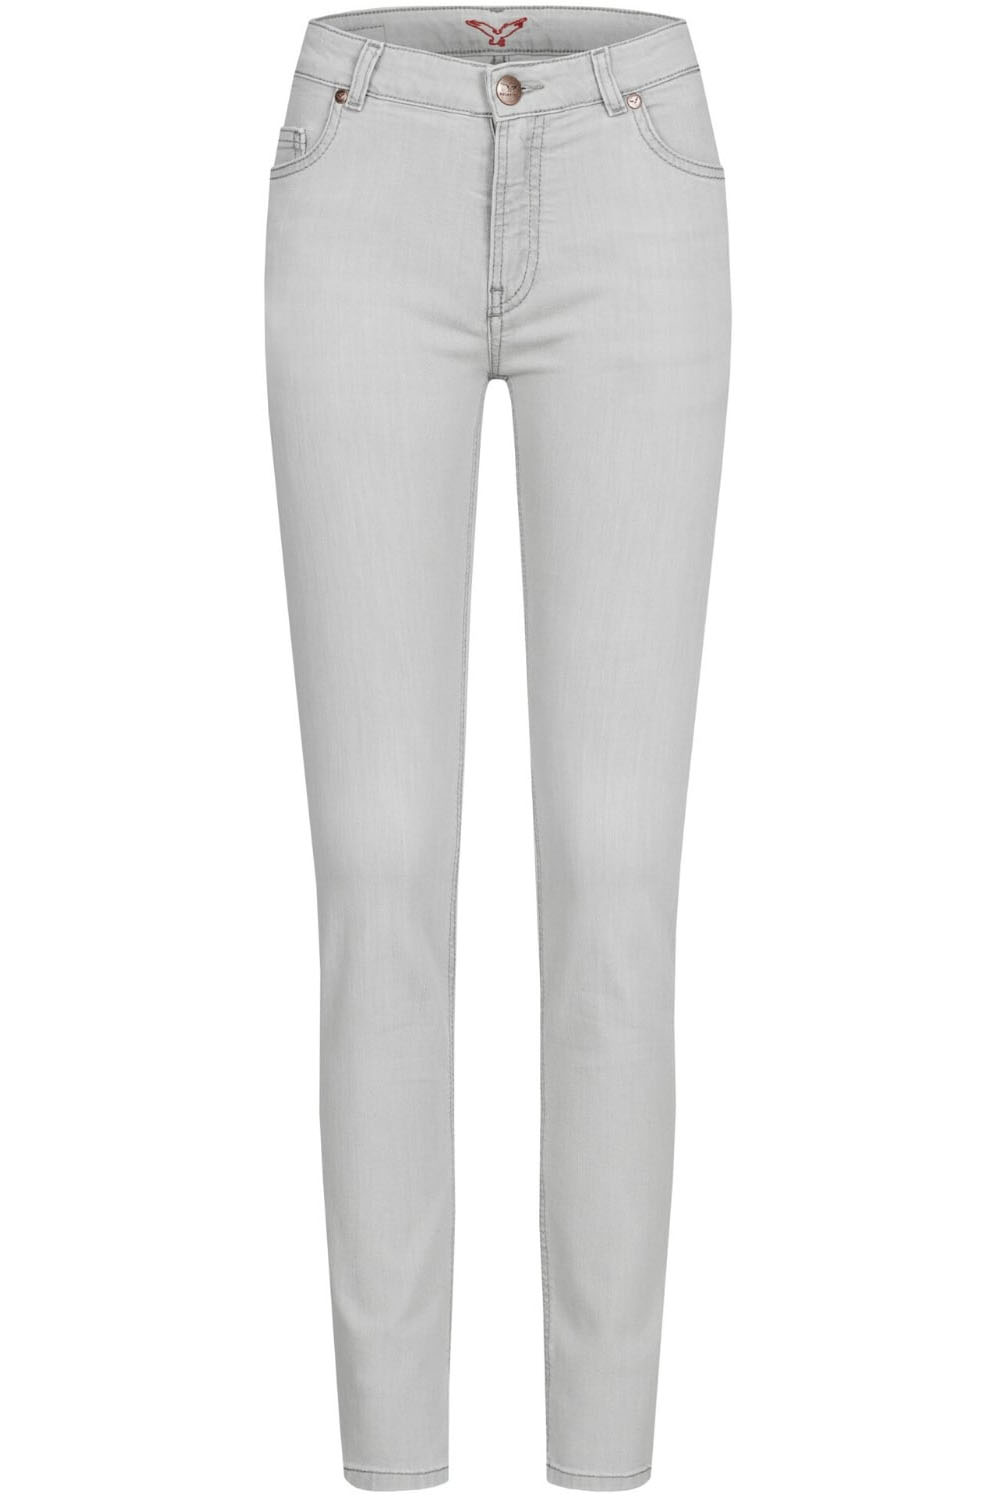 Jeans Svenja SlimFit fashion grey